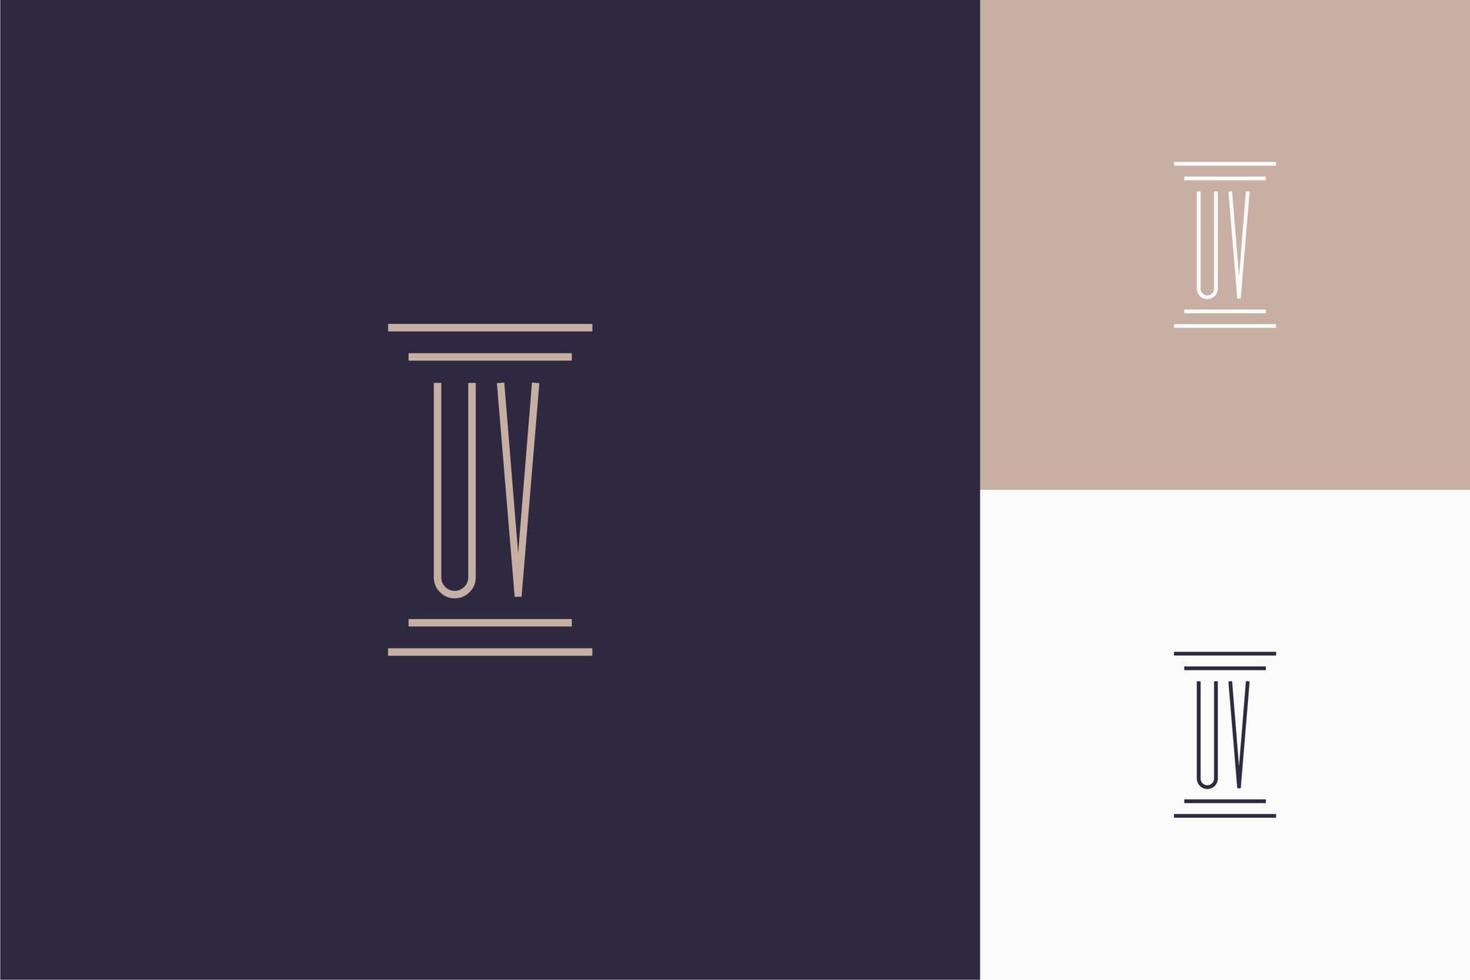 diseño de iniciales de monograma uv para logotipo de bufete de abogados vector